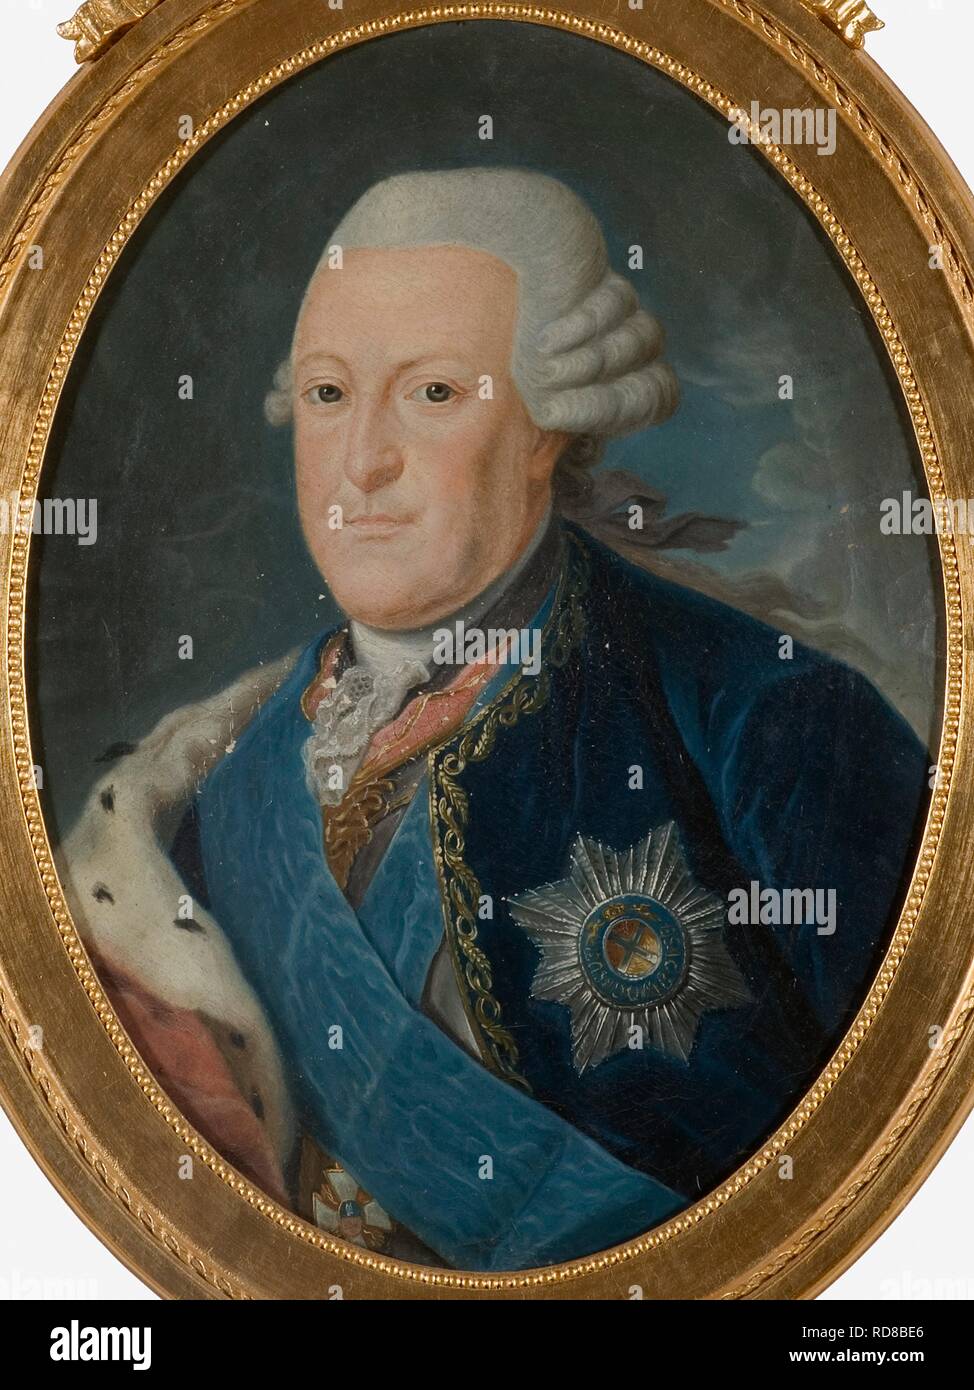 Ritratto di Peter von Biron (1724-1800), duca di Courland e Semigallia. Museo: Nationalmuseum di Stoccolma. Autore: anonimo. Foto Stock